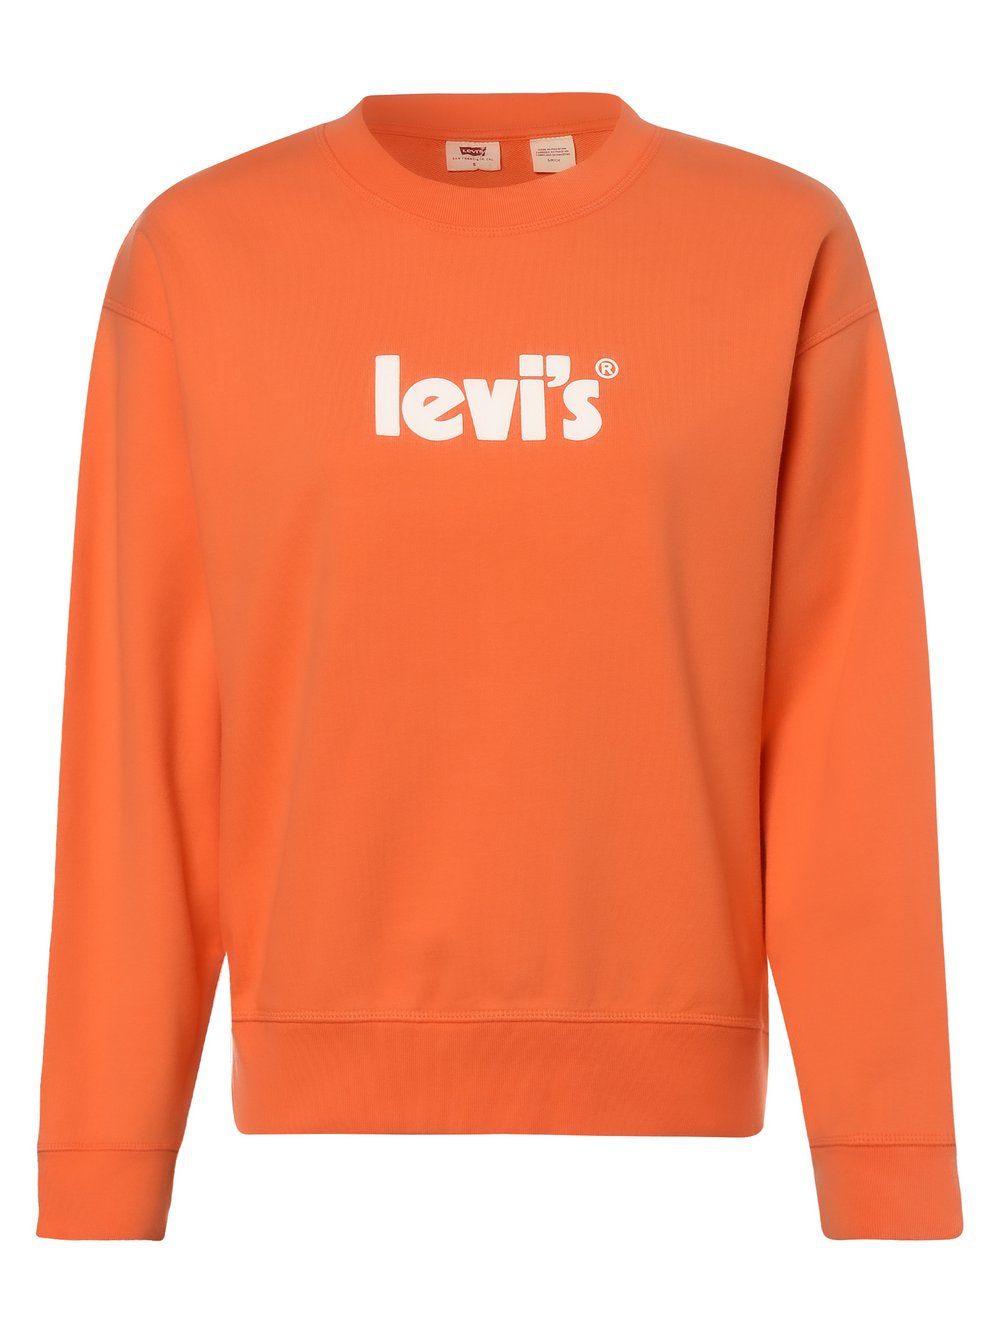 Levi's - Damska bluza nierozpinana, pomarańczowy